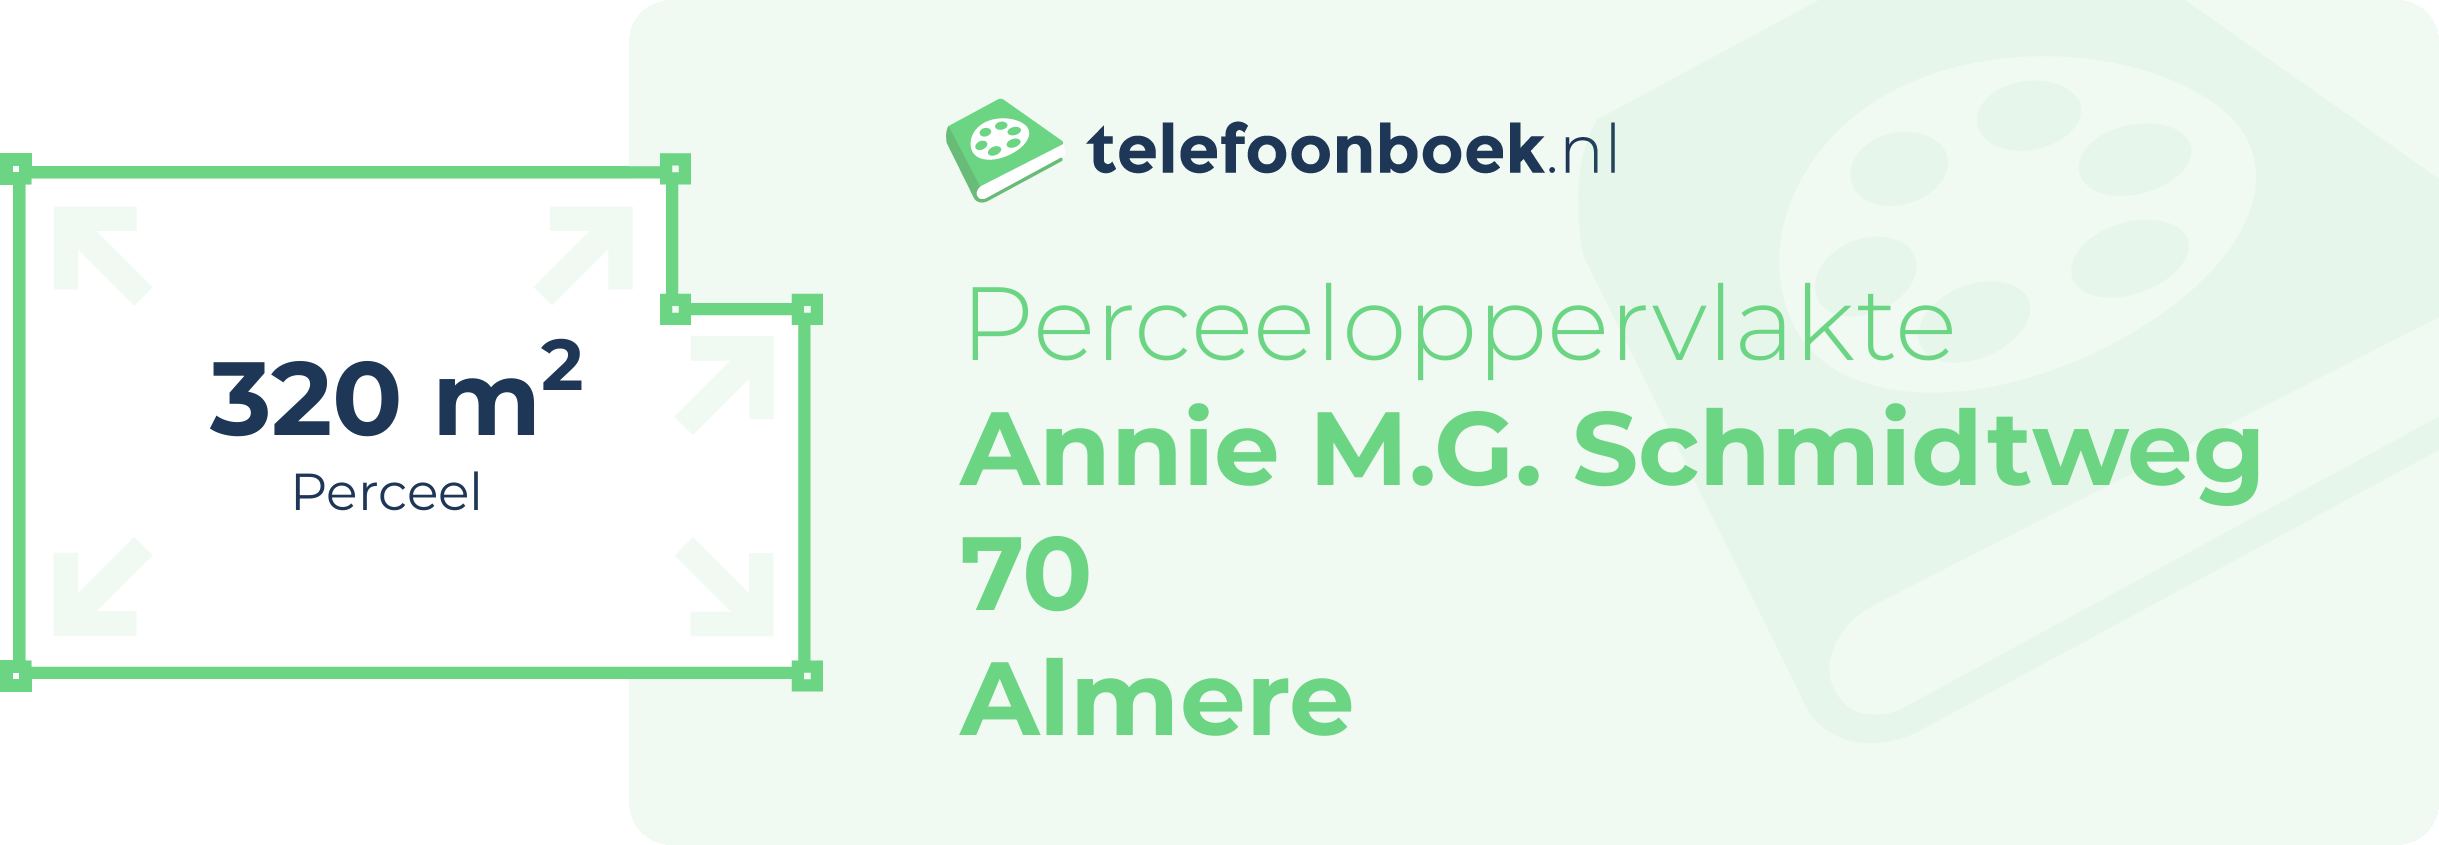 Perceeloppervlakte Annie M.G. Schmidtweg 70 Almere